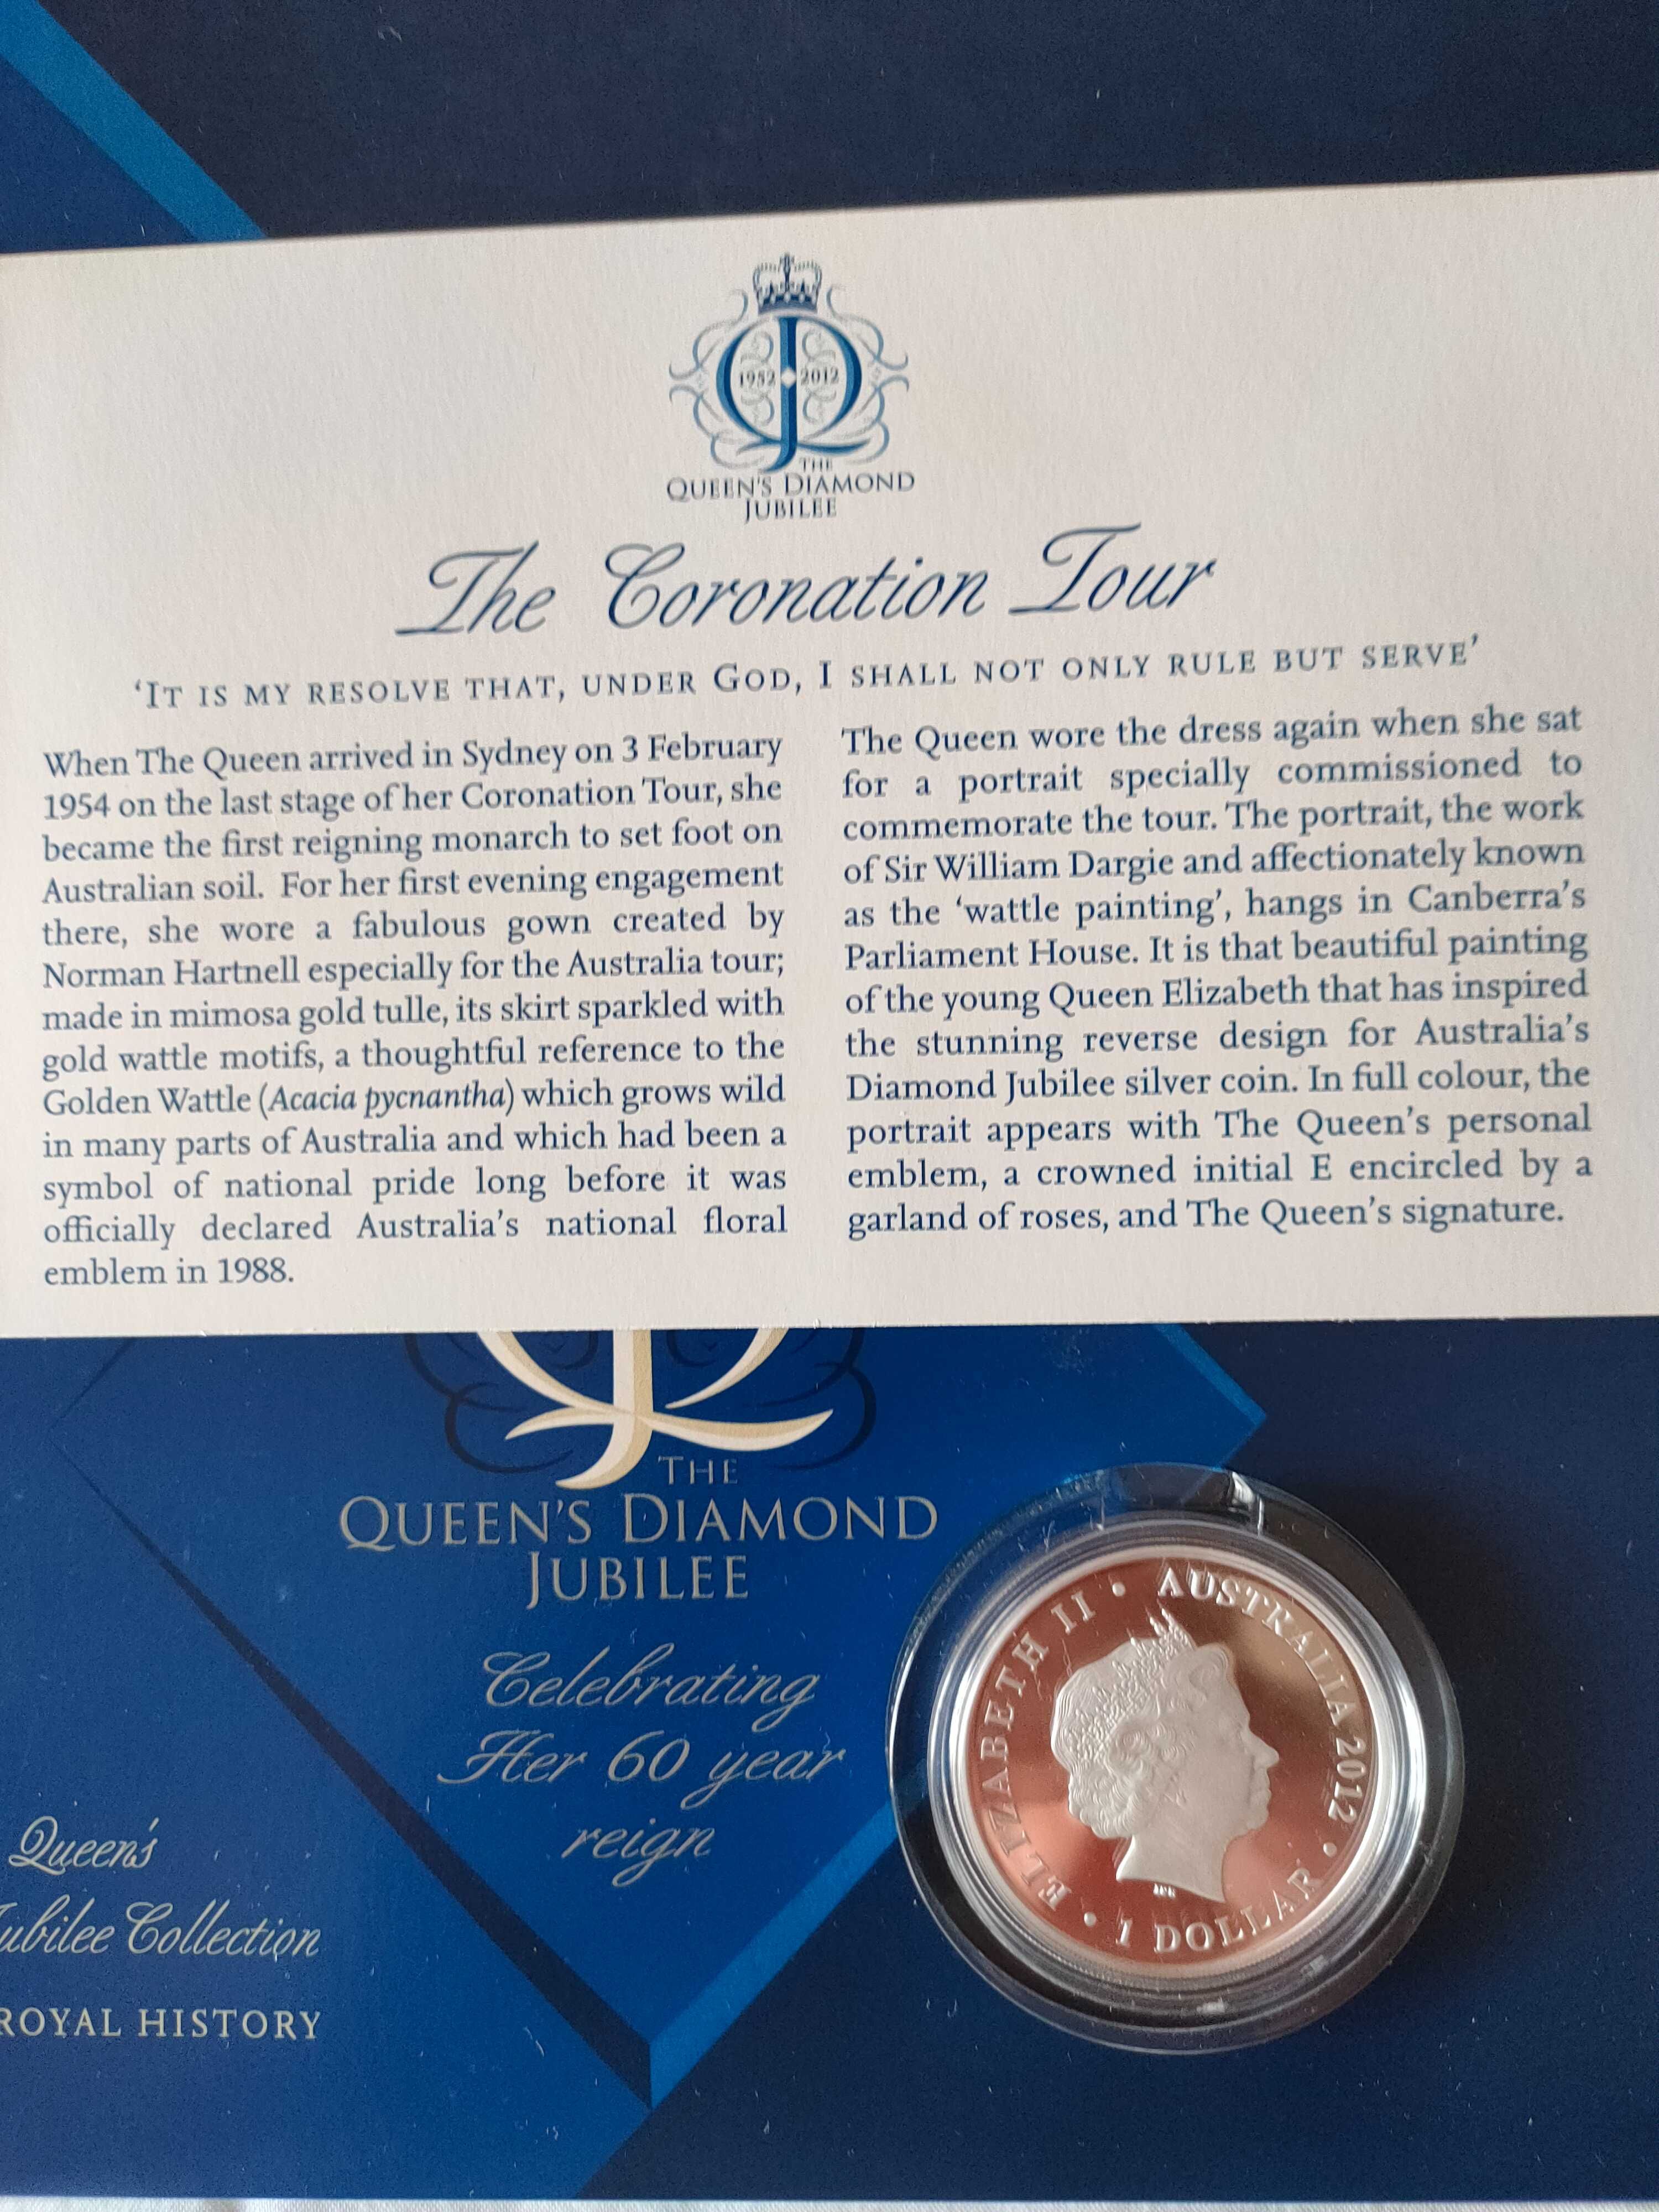 Rainha Isabel II - moedas da coleção do Jubileu Diamante